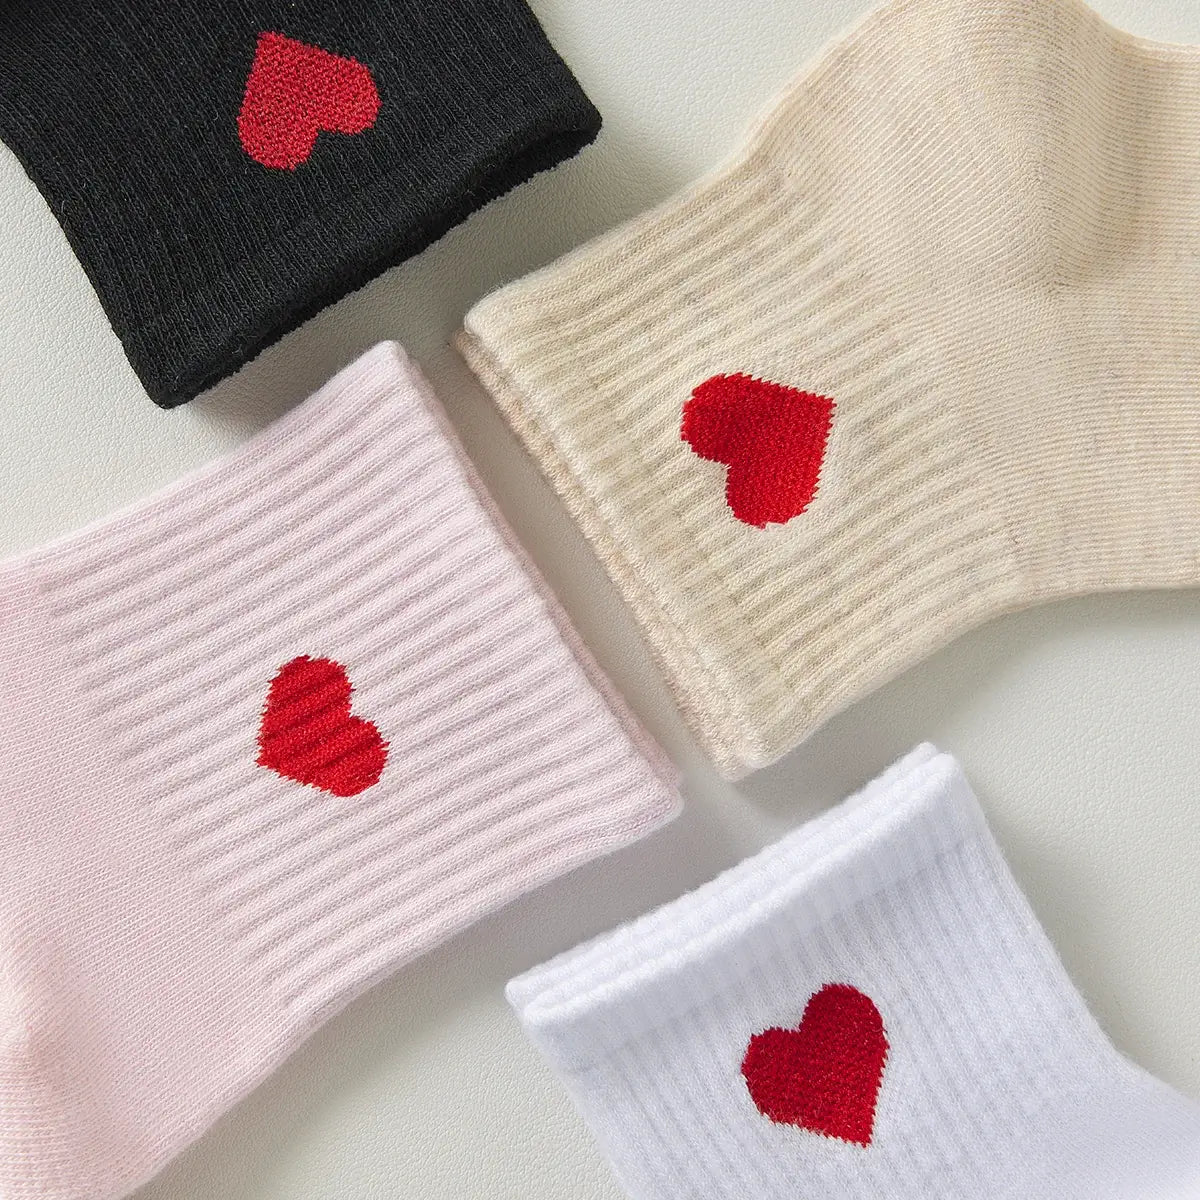 Lot zoomé chaussettes longues adultes en coton avec un cœur rose sur le côté | Chaussettes abordables et de haute qualité | Un excellent choix pour les adultes qui aiment les cœurs |